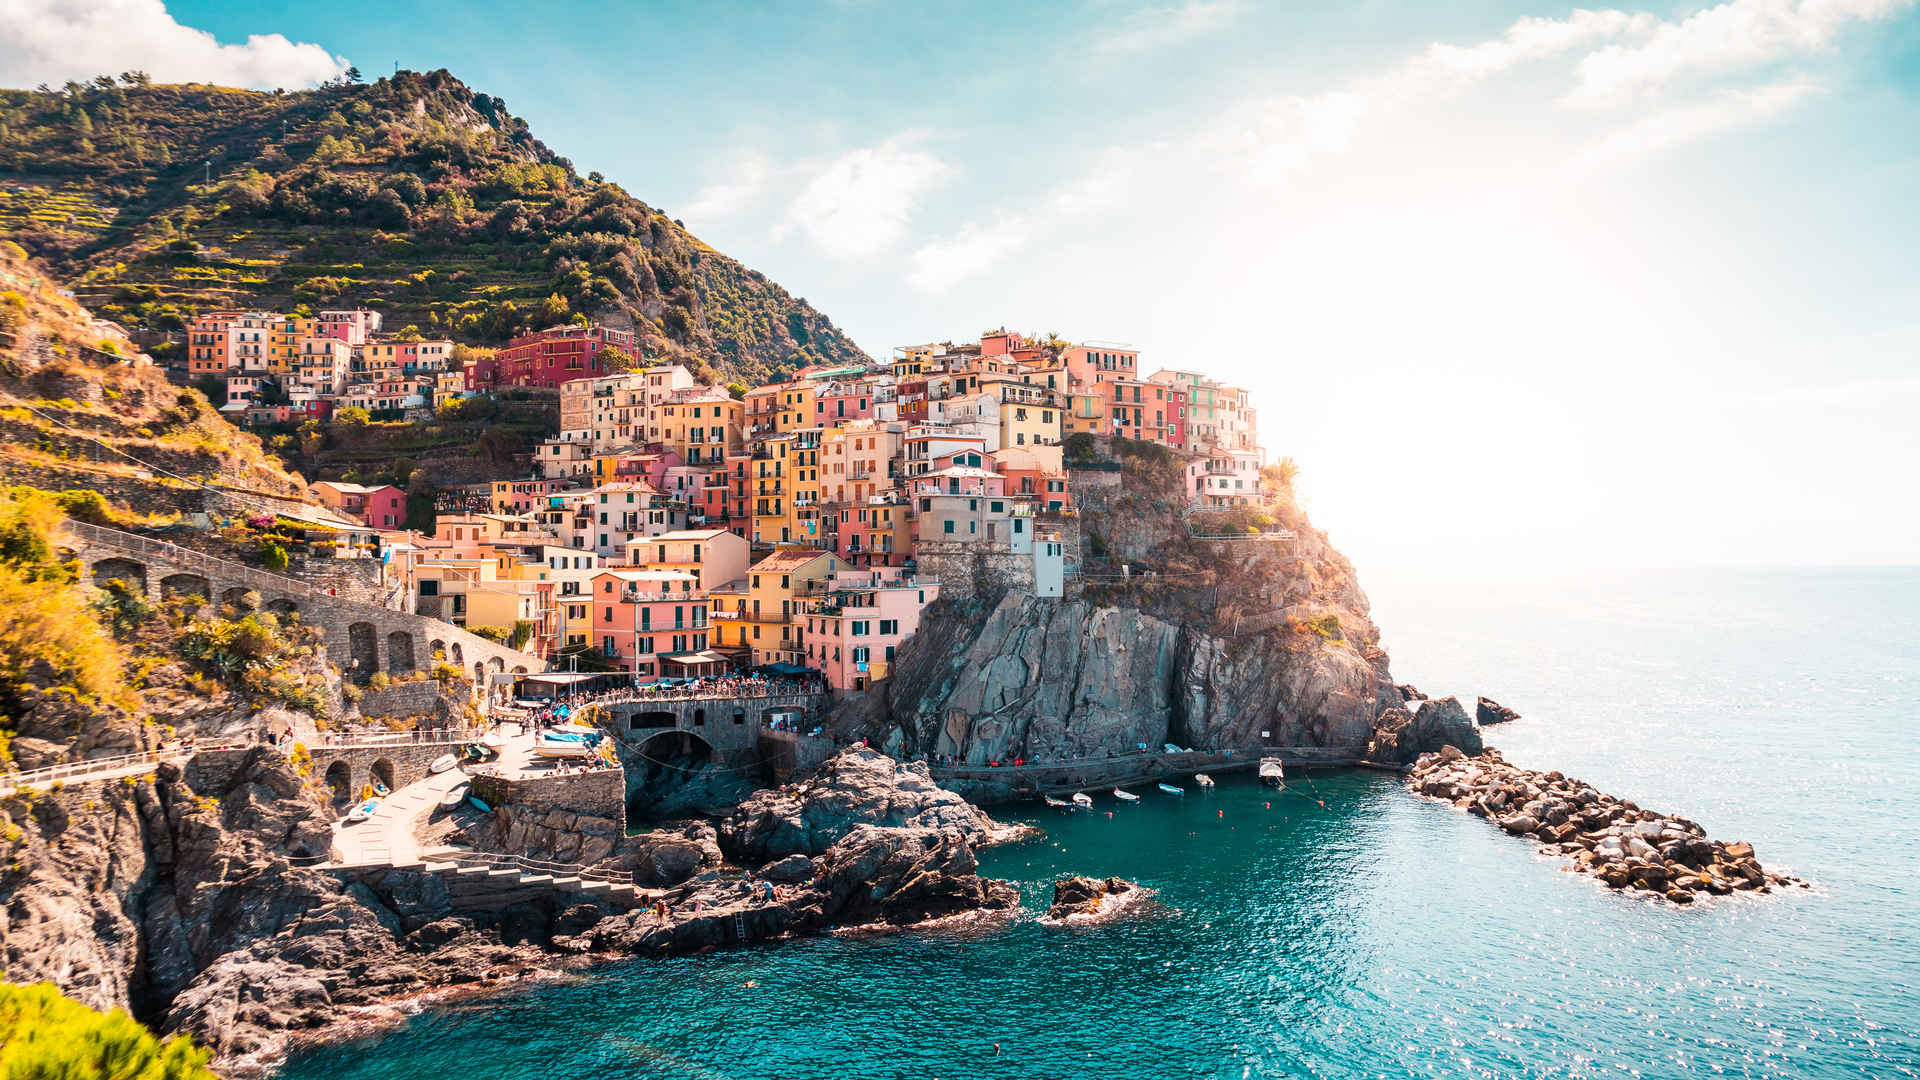 意大利马纳罗拉 悬崖上的小镇 五渔村4k高清风景壁纸